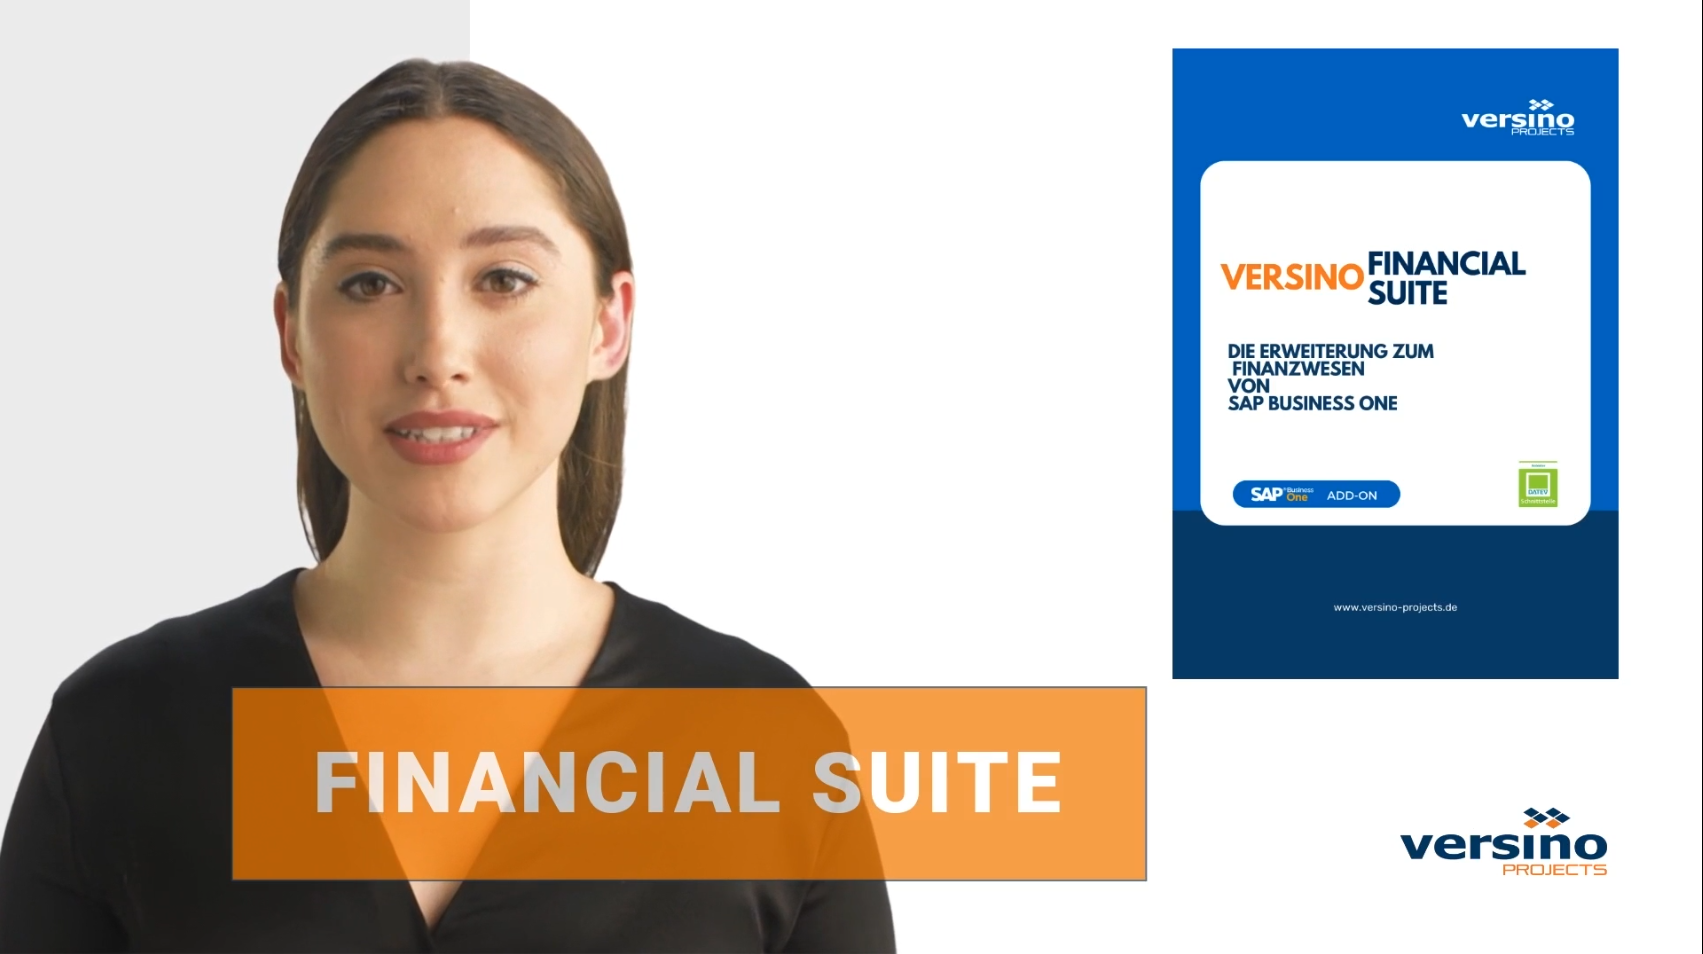 Versino Financial Suite - Overview